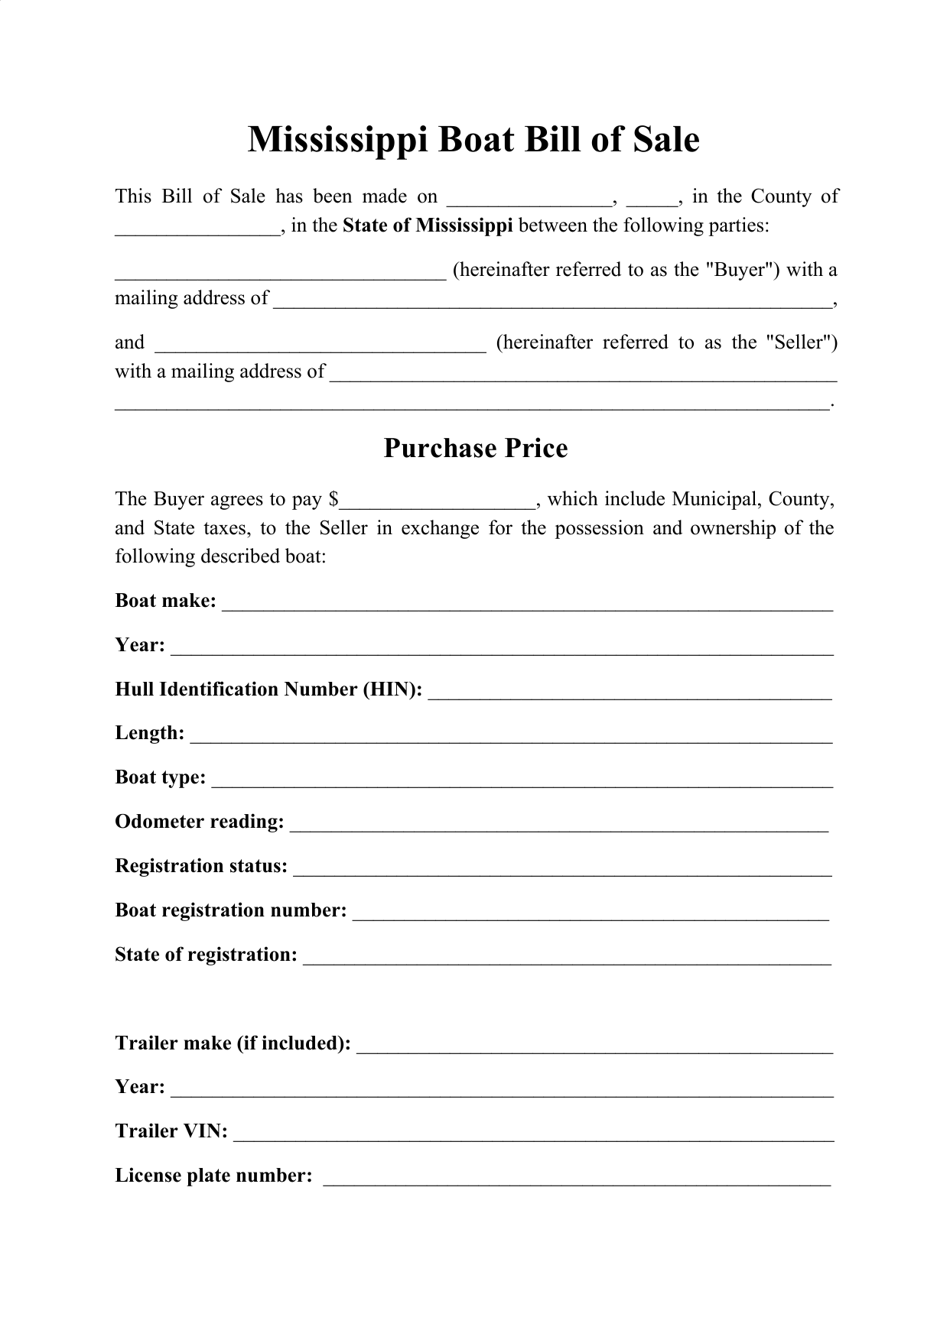 mississippi boat bill of sale form download printable pdf templateroller